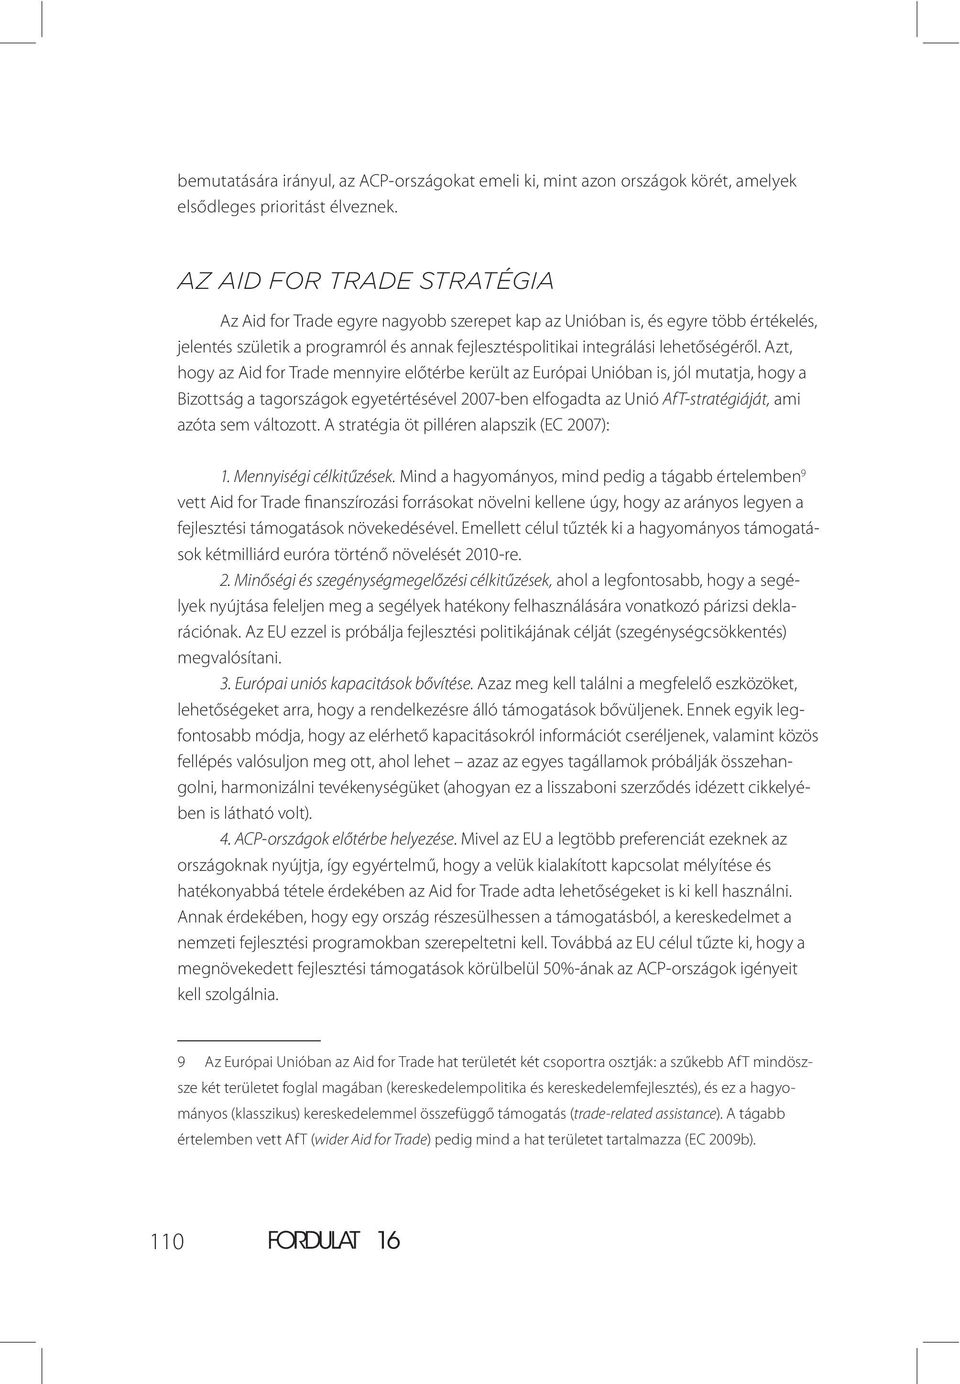 Azt, hogy az Aid for Trade mennyire előtérbe került az Európai Unióban is, jól mutatja, hogy a Bizottság a tagországok egyetértésével 2007-ben elfogadta az Unió AfT-stratégiáját, ami azóta sem